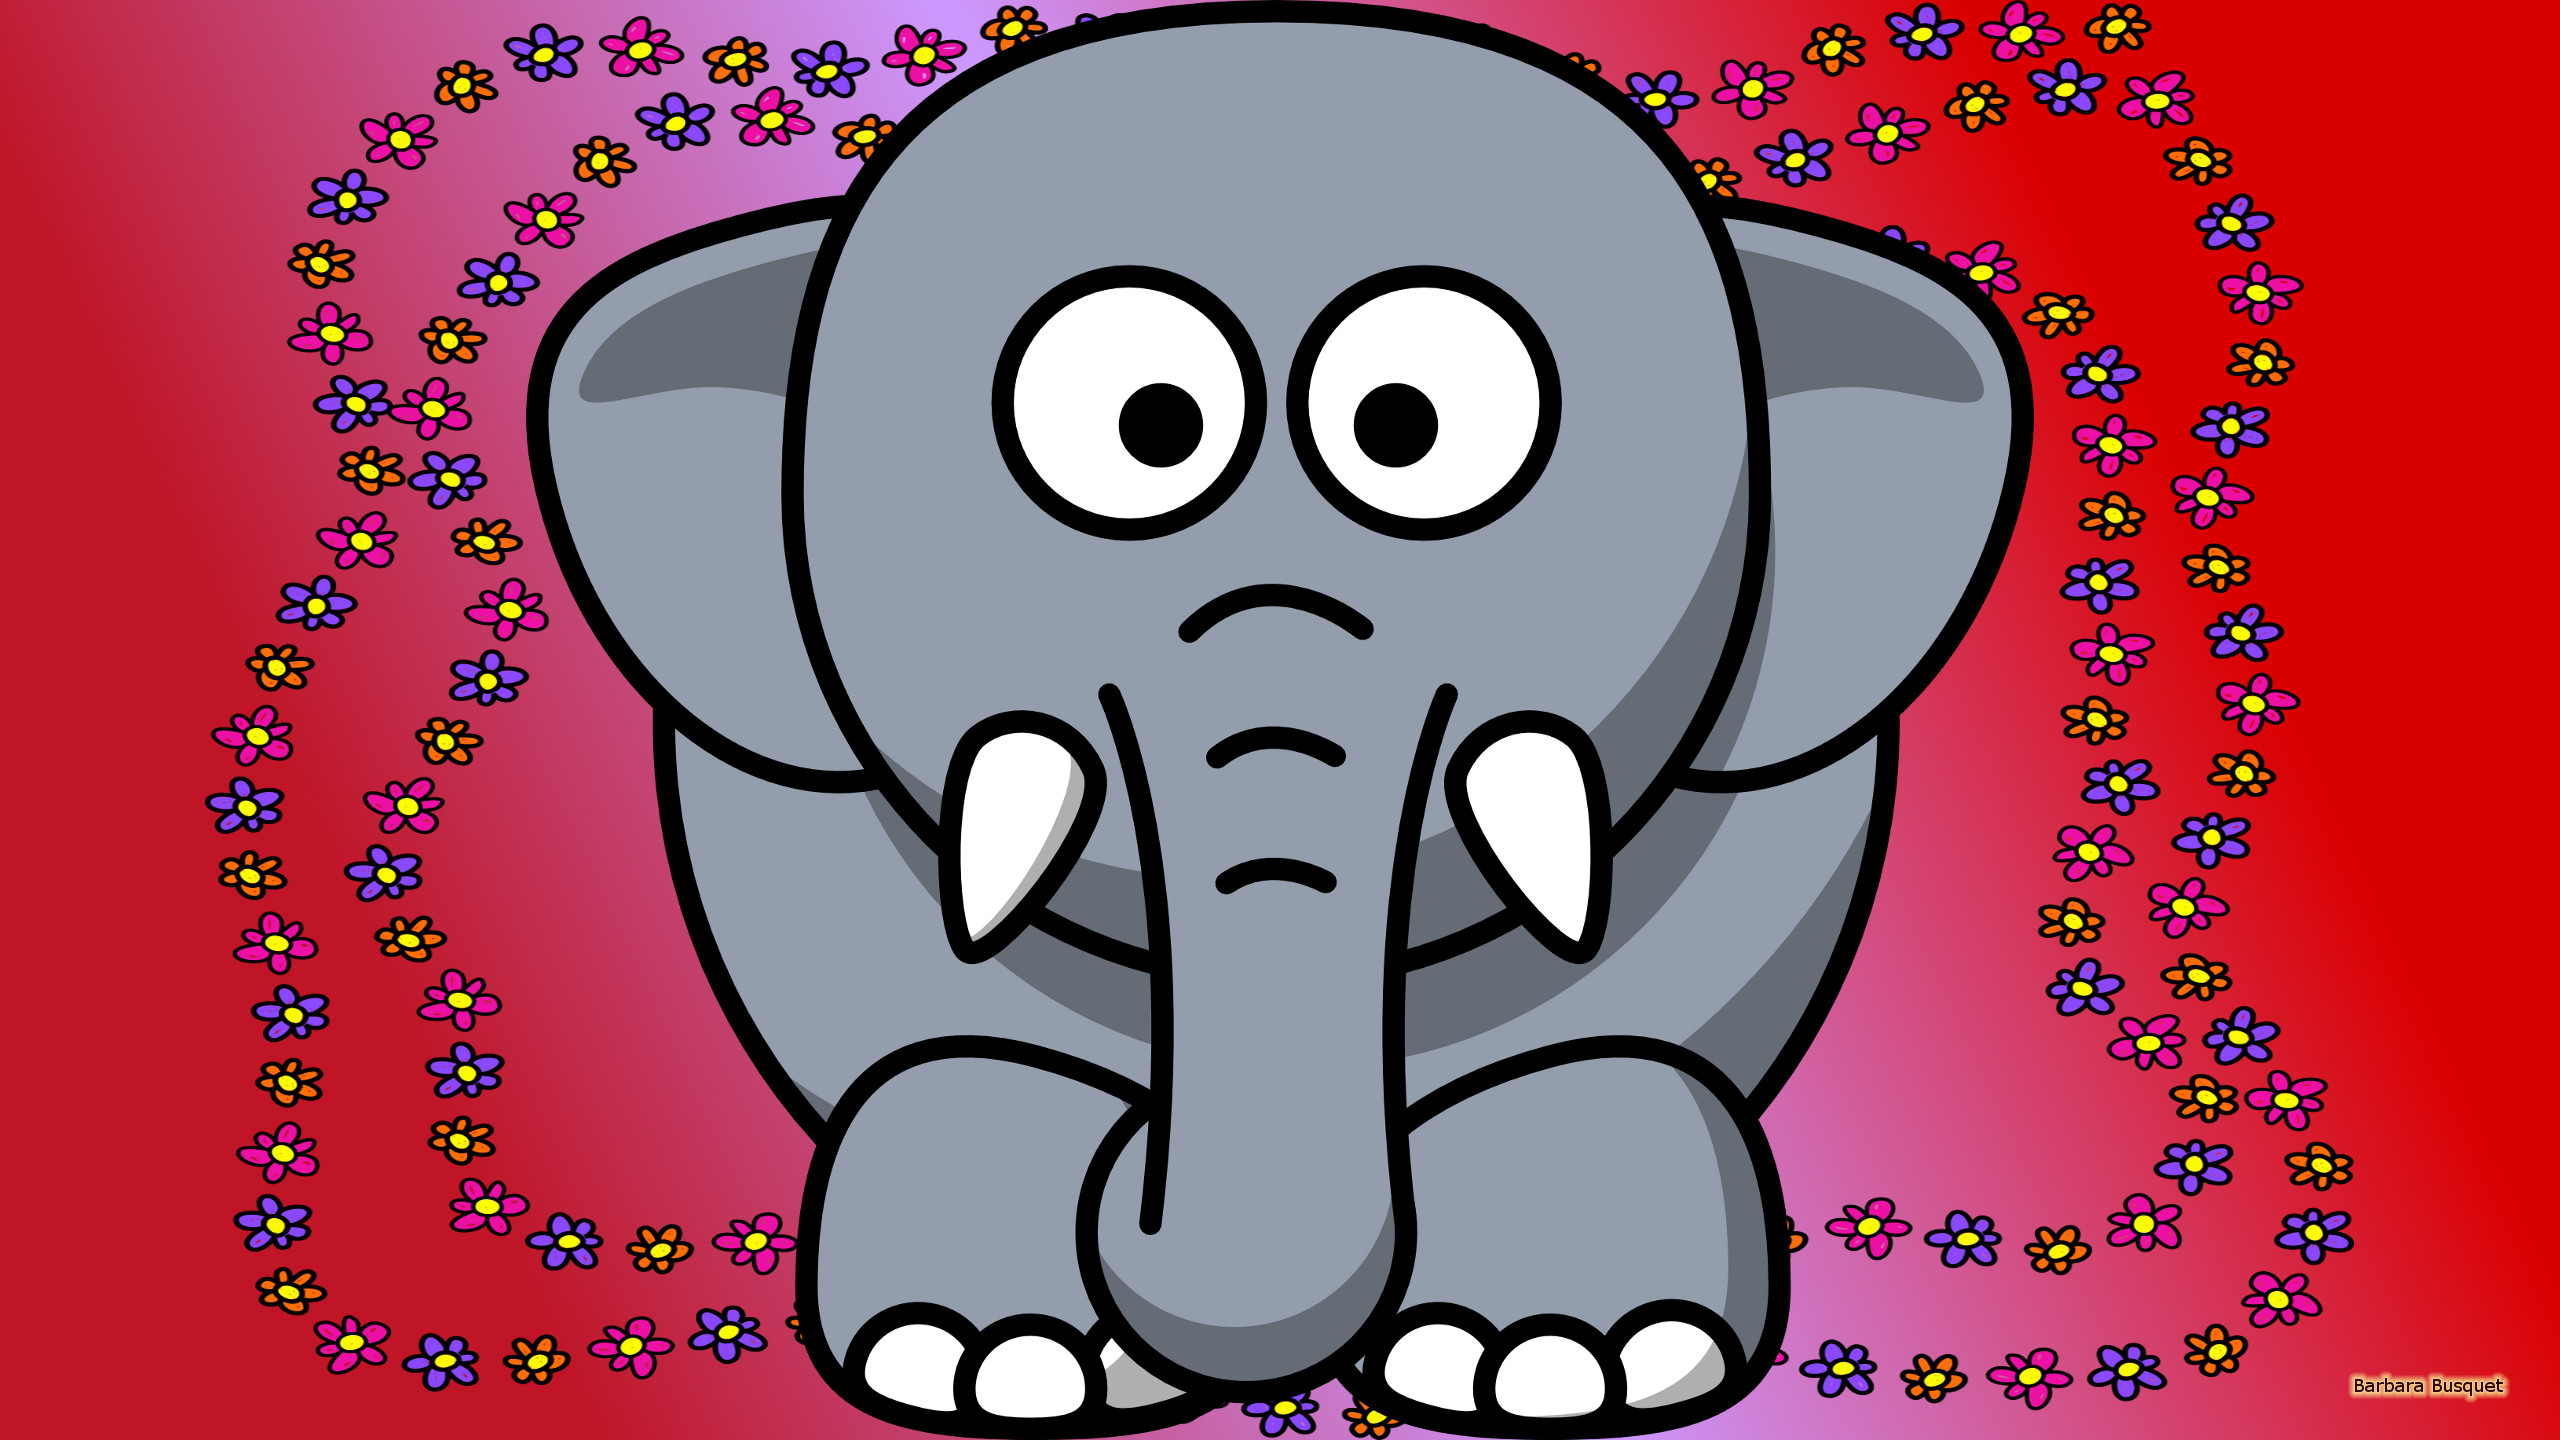 elephant wallpaper,elephant,elephants and mammoths,indian elephant,cartoon,snout